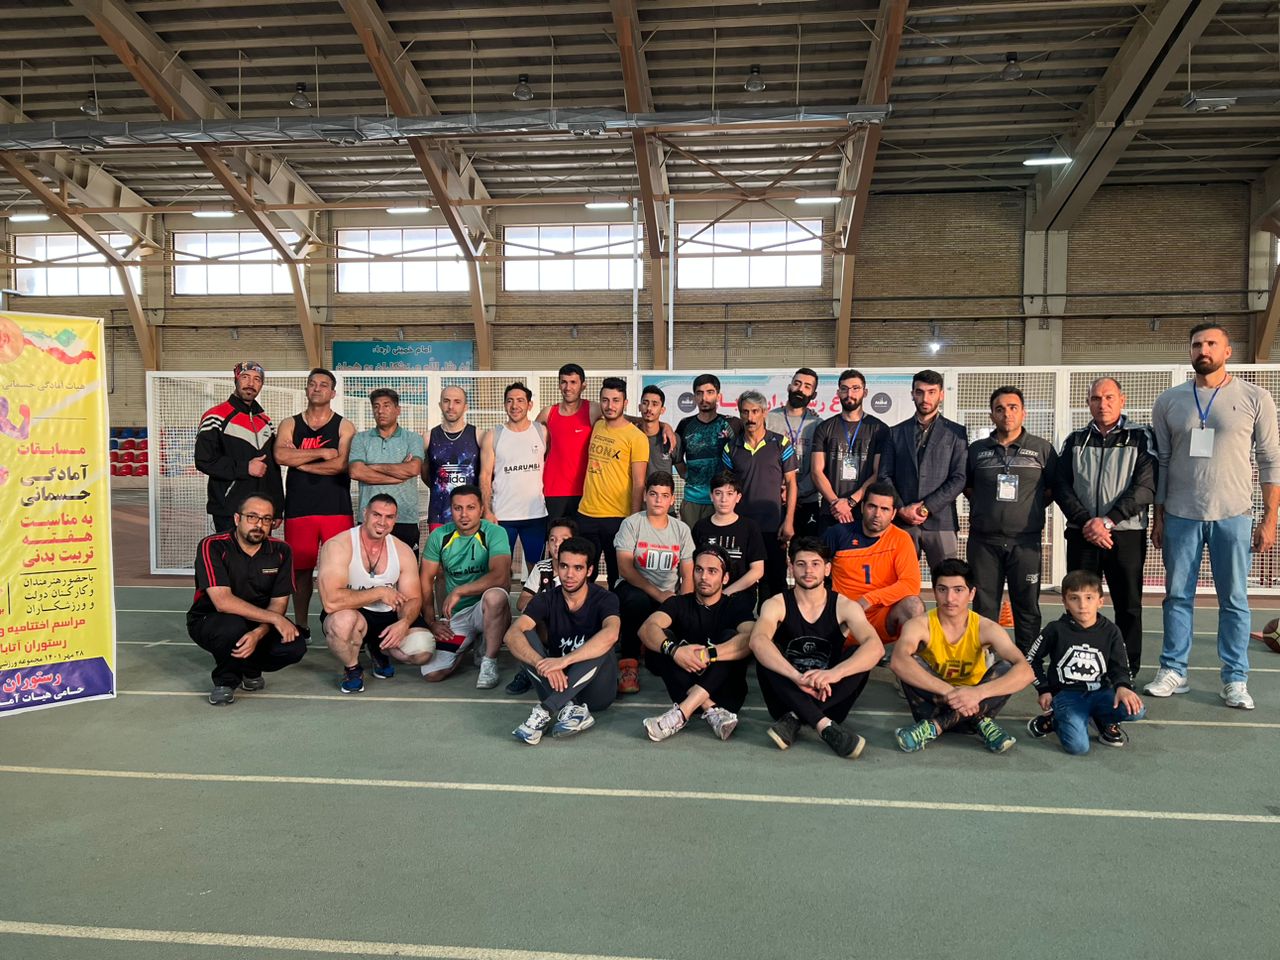 پایان مسابقات آمادگی جسمانی شهرستان ارومیه با حضور ۹۰ ورزشکار